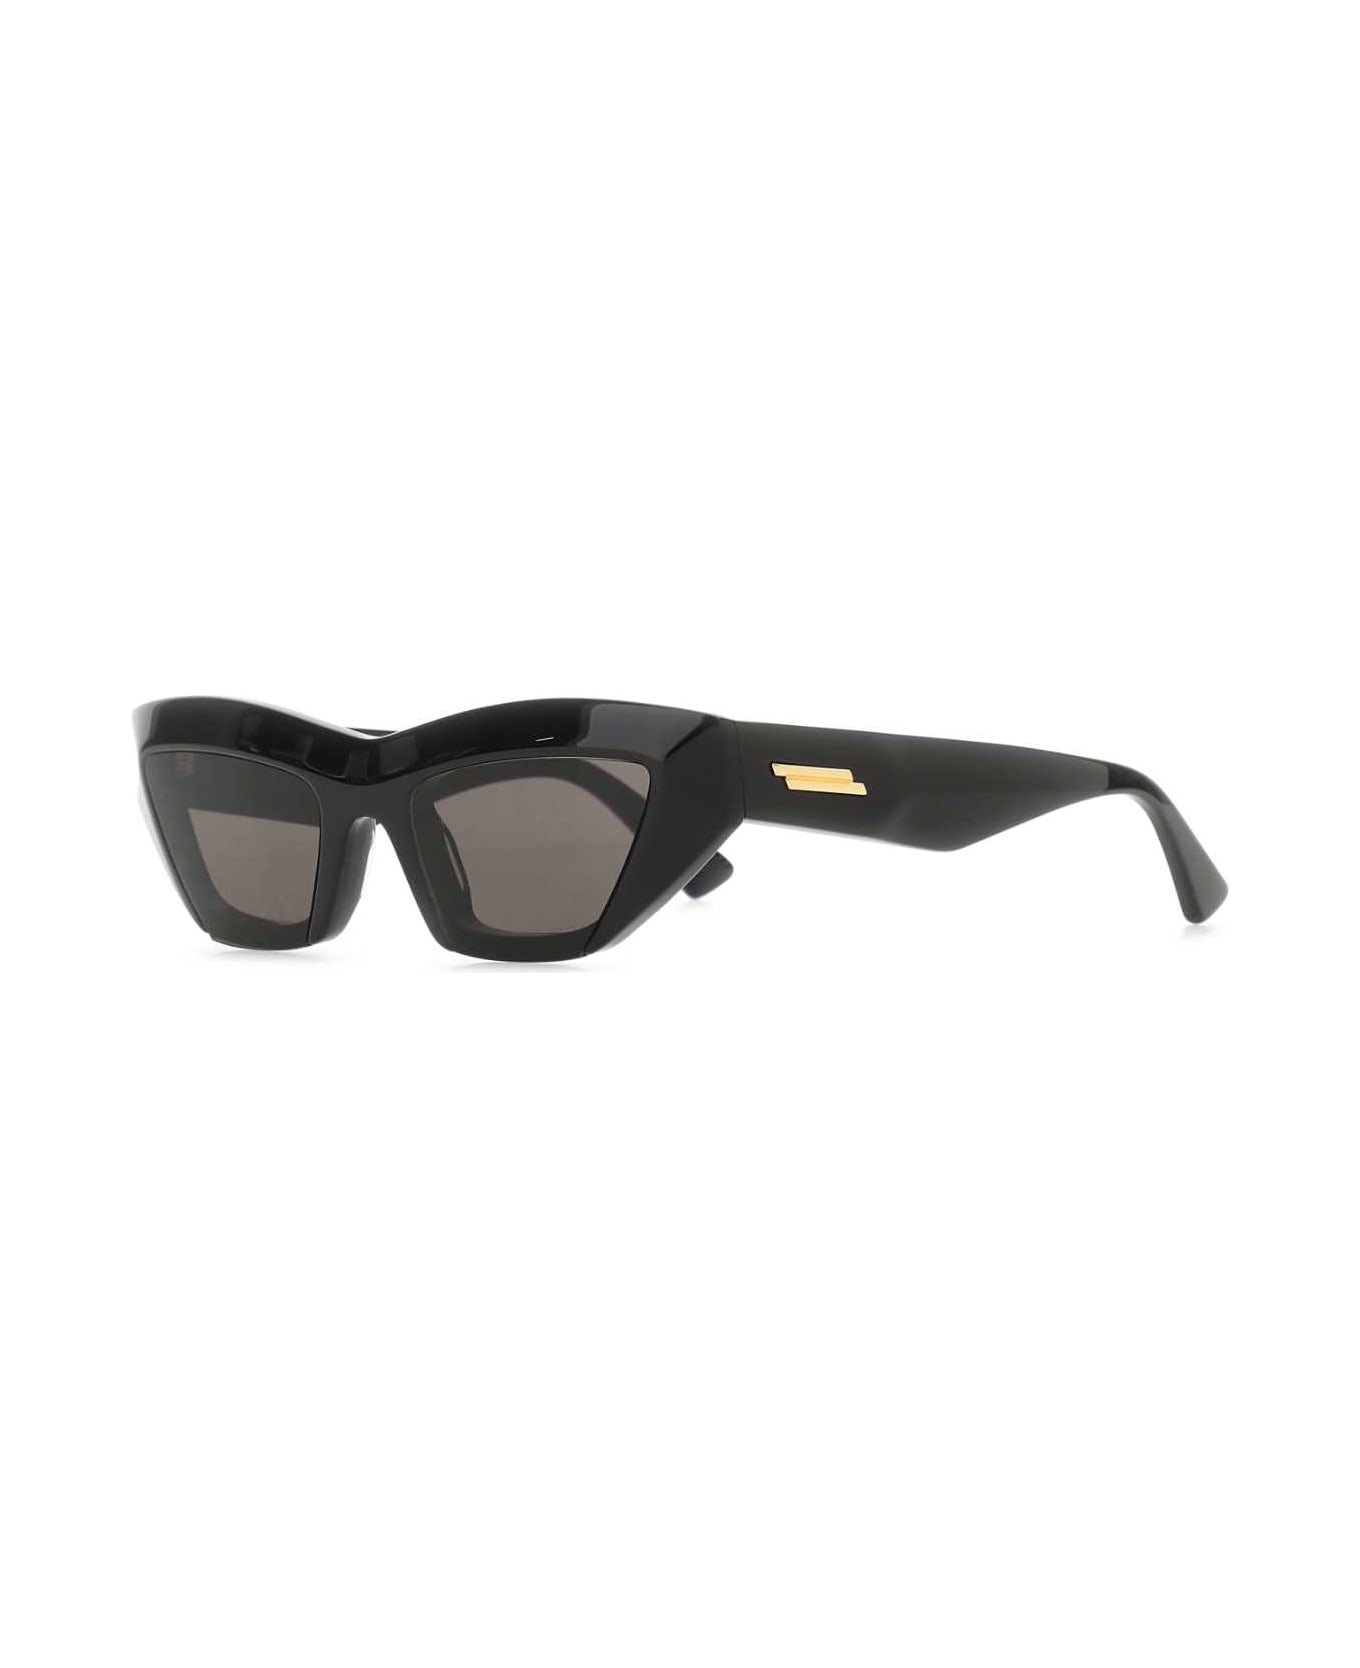 Bottega Veneta Black Acetate Sunglasses - Multicolor